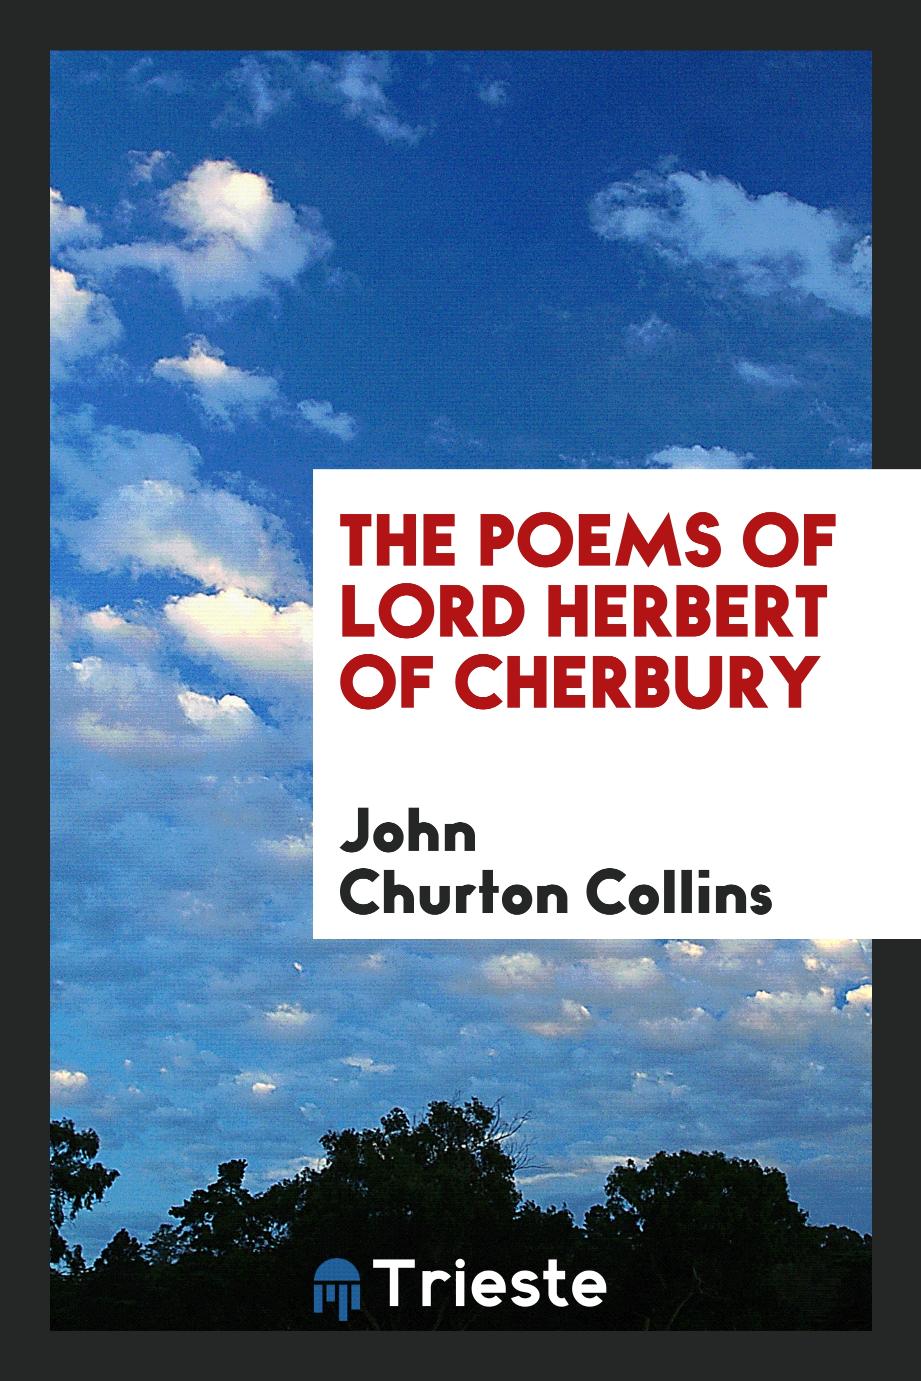 The poems of Lord Herbert of Cherbury